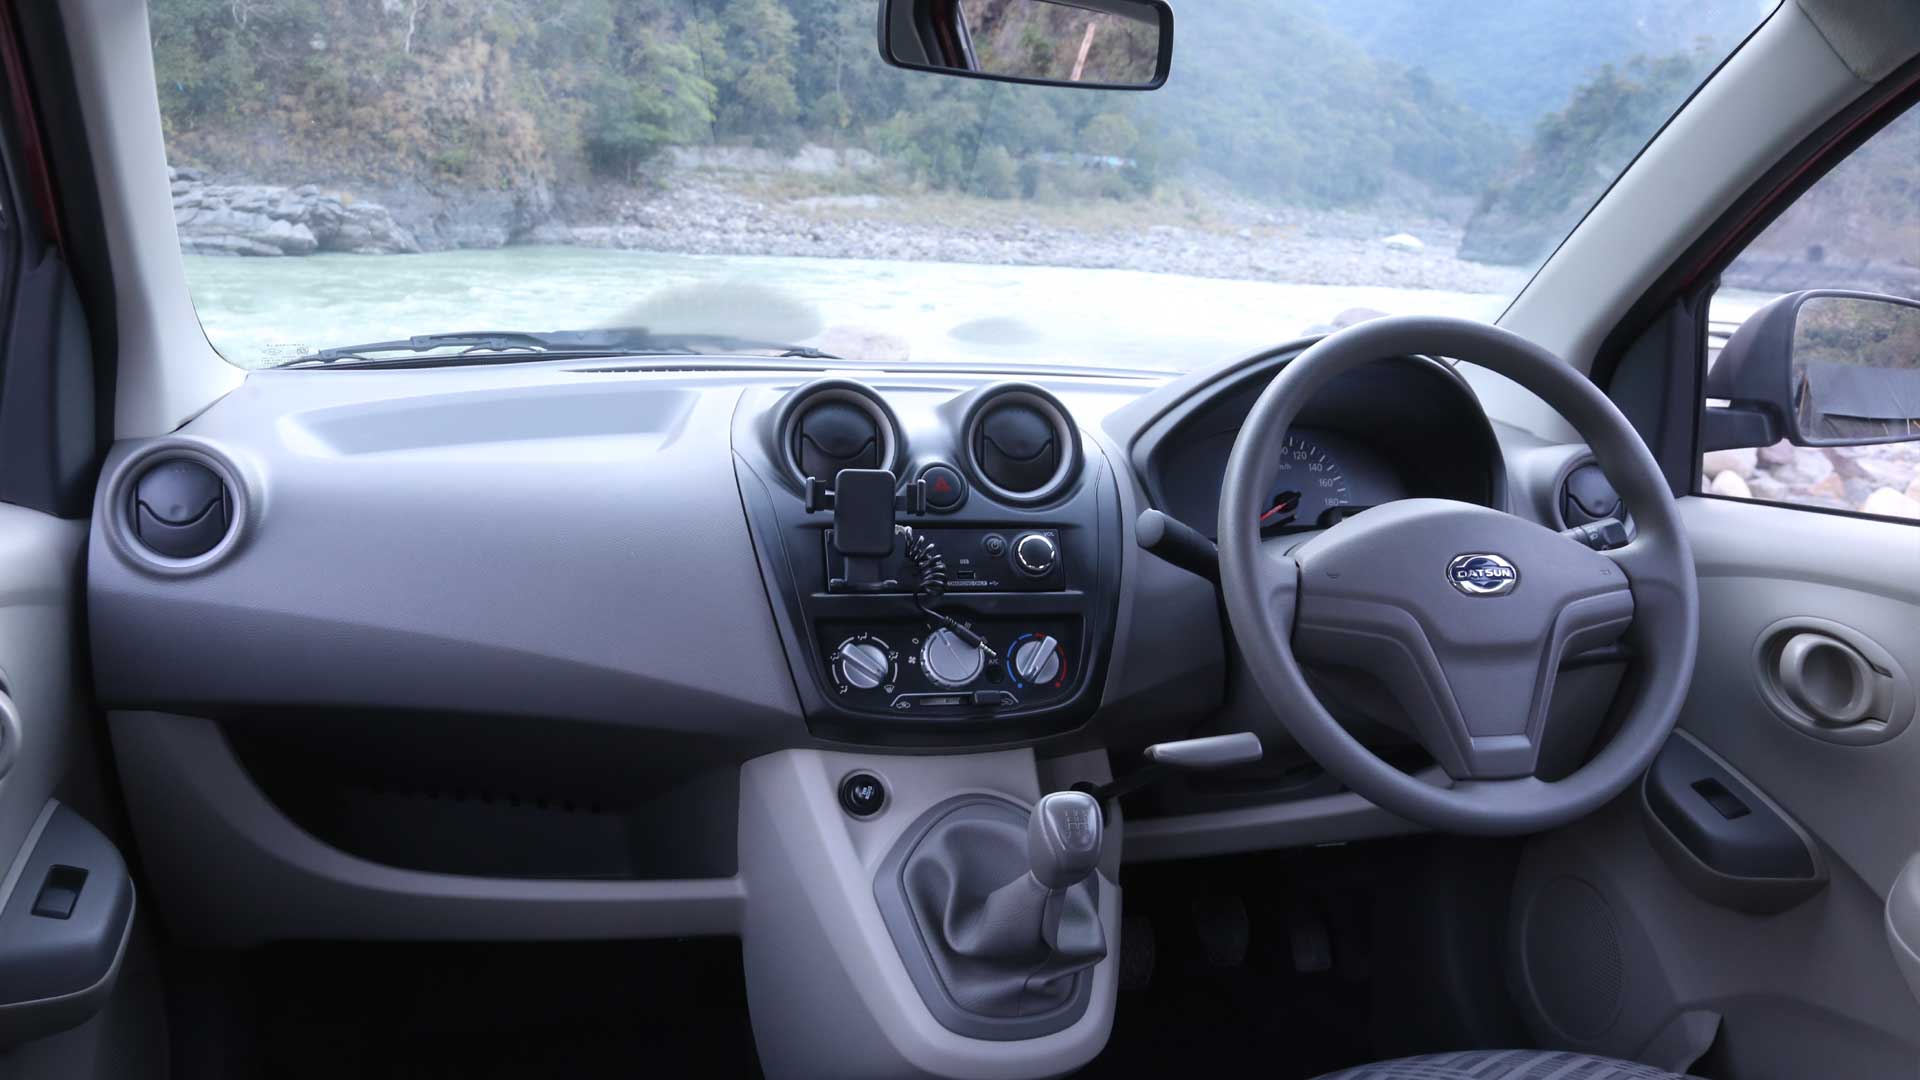 Datsun Go Plus 2015 Interior Car Photos Overdrive